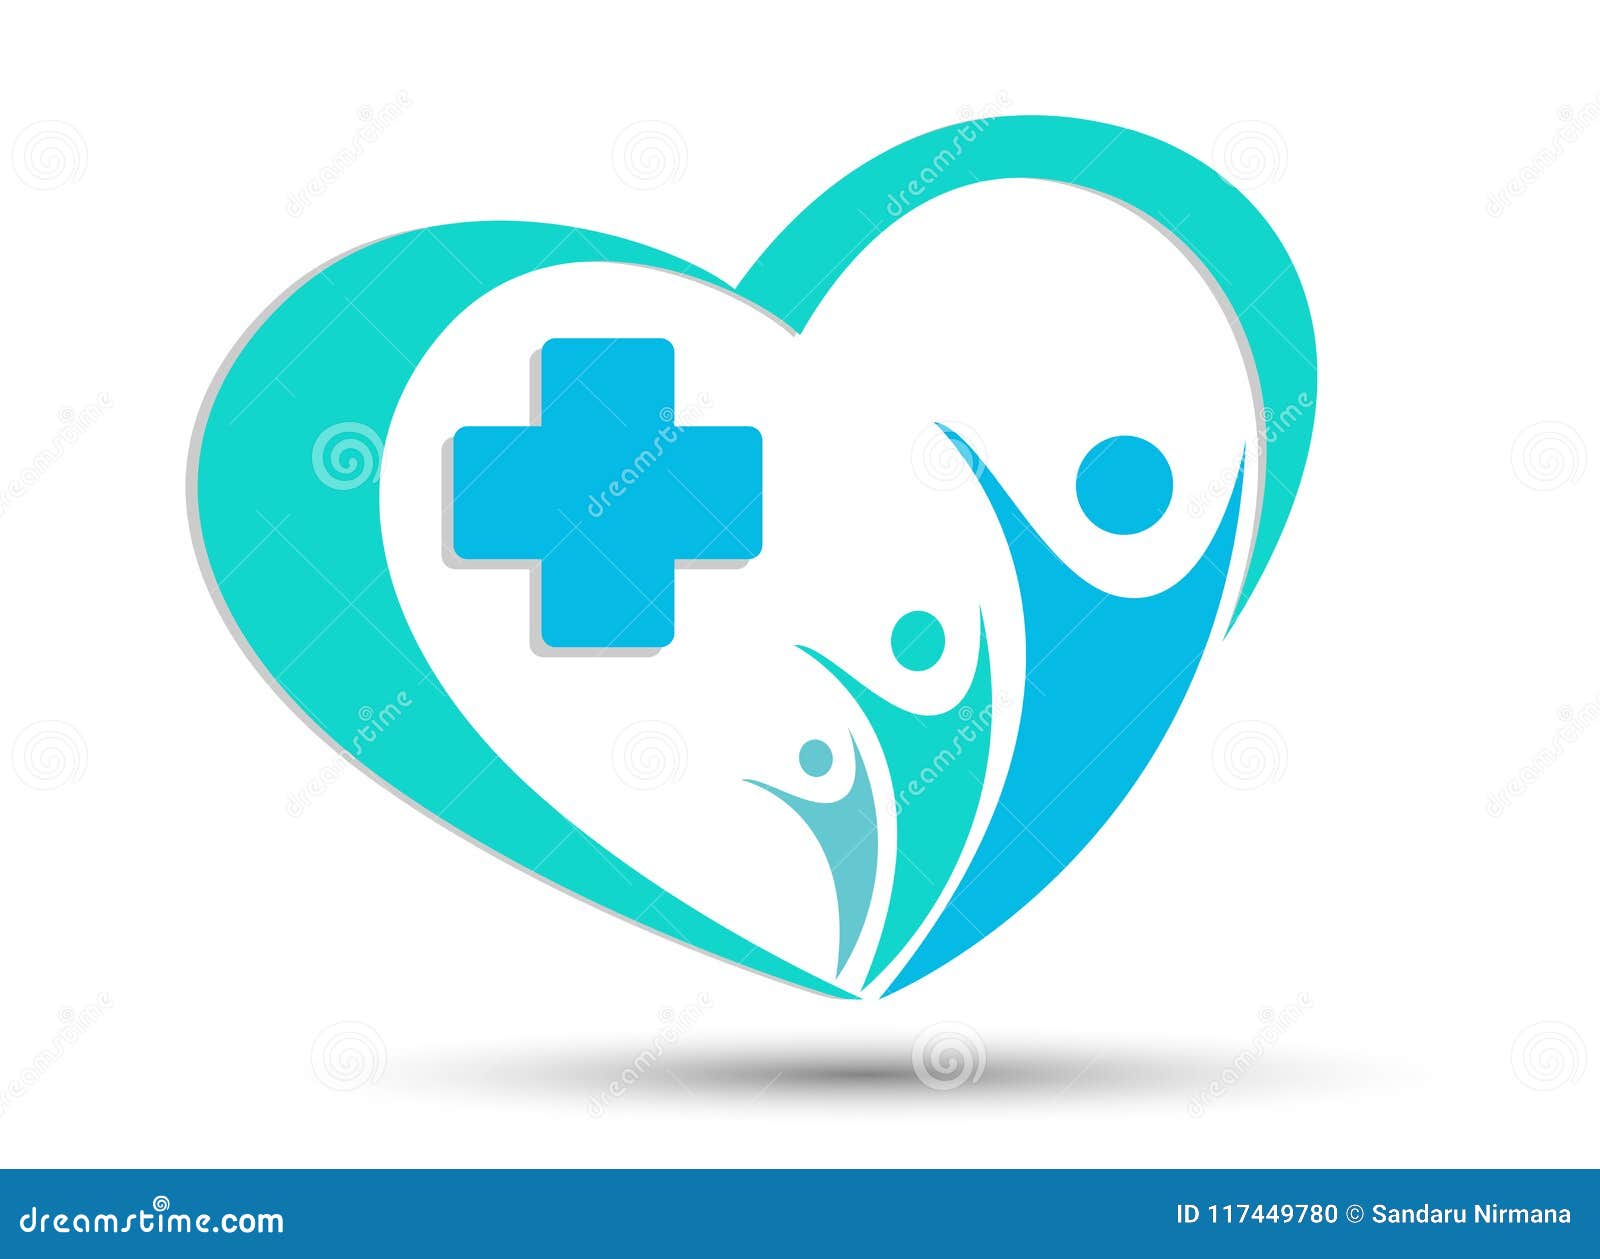 medical cross heart family health logo icon